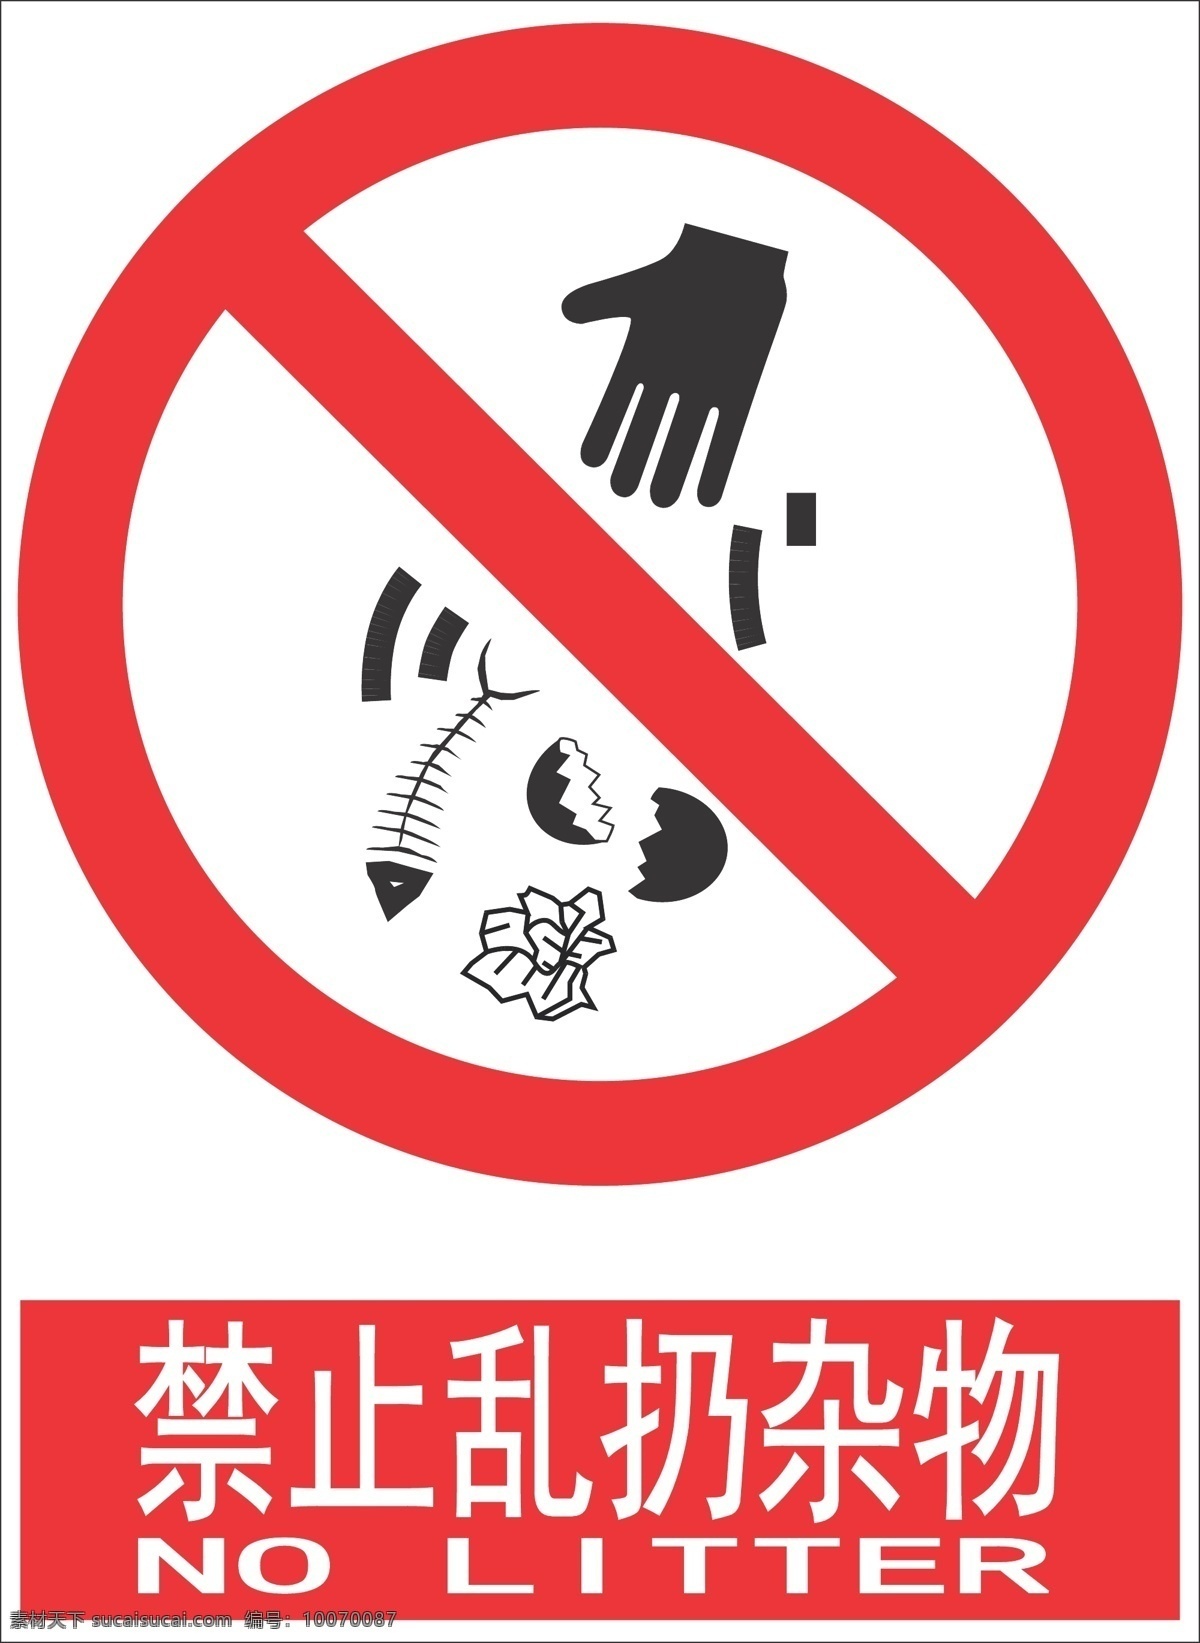 禁止乱扔杂物 禁止 乱扔 杂物 垃圾 公共标识标志 标识标志图标 矢量